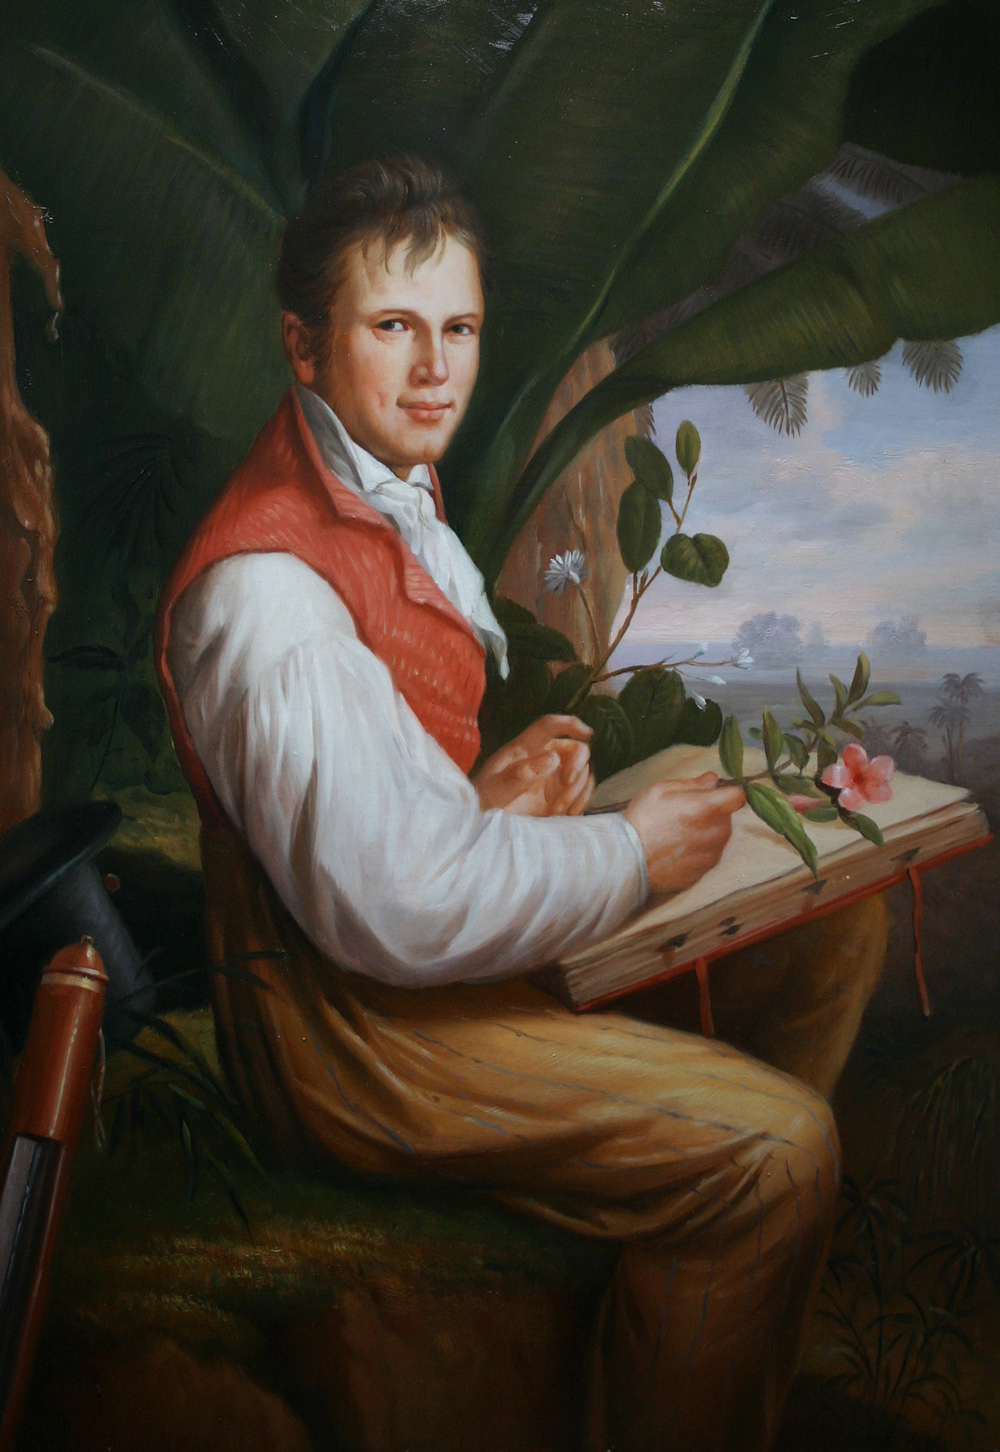 Gemäldekopie auf Holz, Alexander von Humboldt nach Friedrich Georg Weitsch